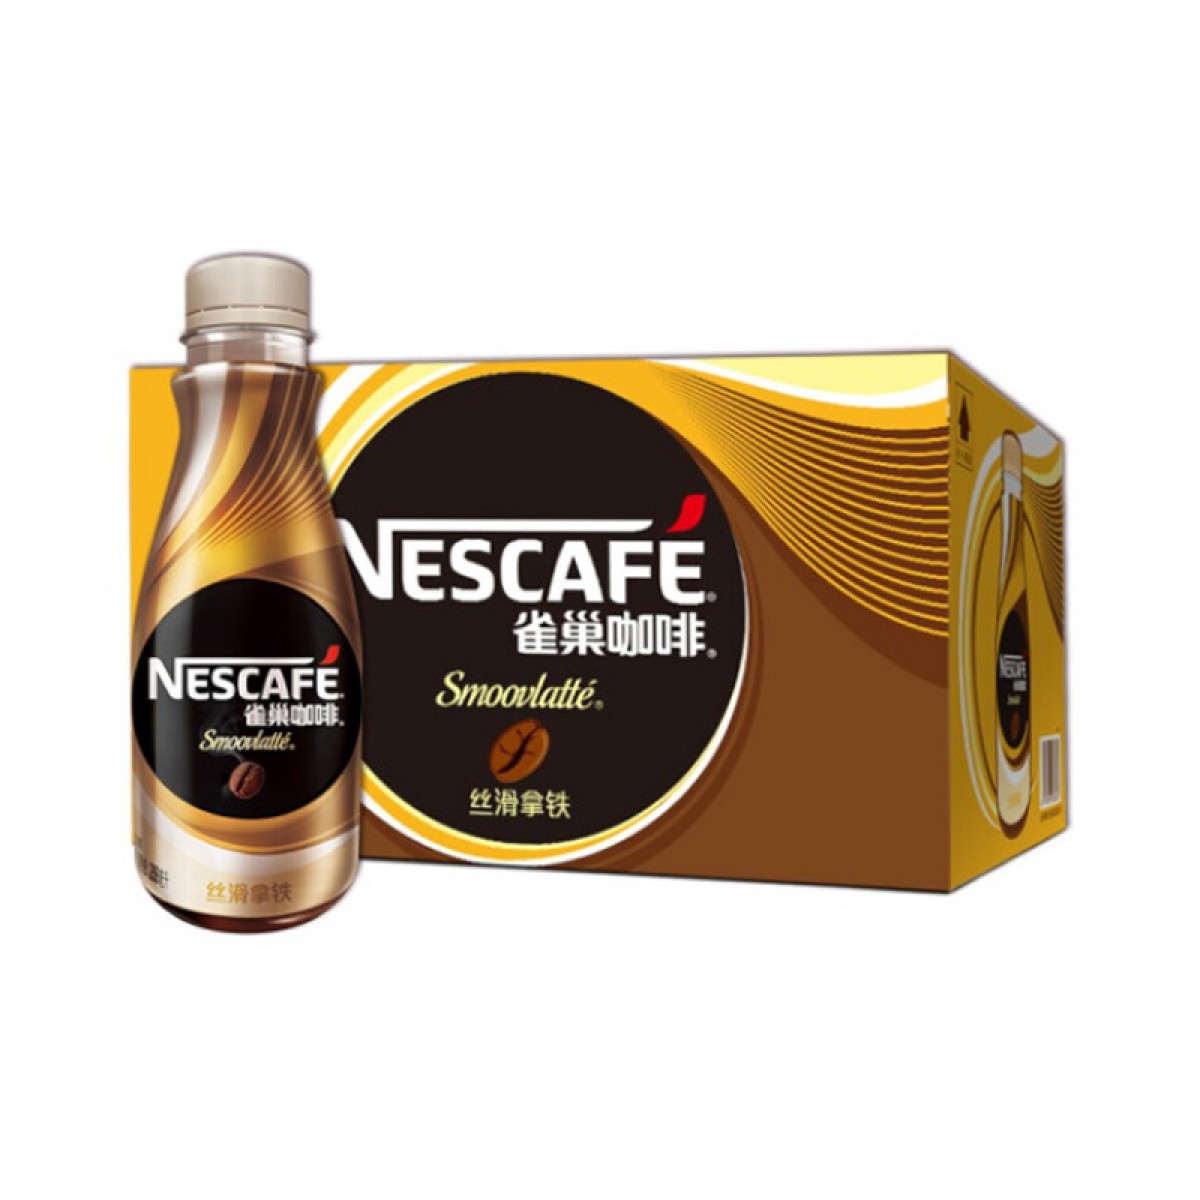 雀巢咖啡(Nescafe) 即饮咖啡 丝滑拿铁口味 咖啡饮料 268mlX15瓶 整箱（新旧包装替换）